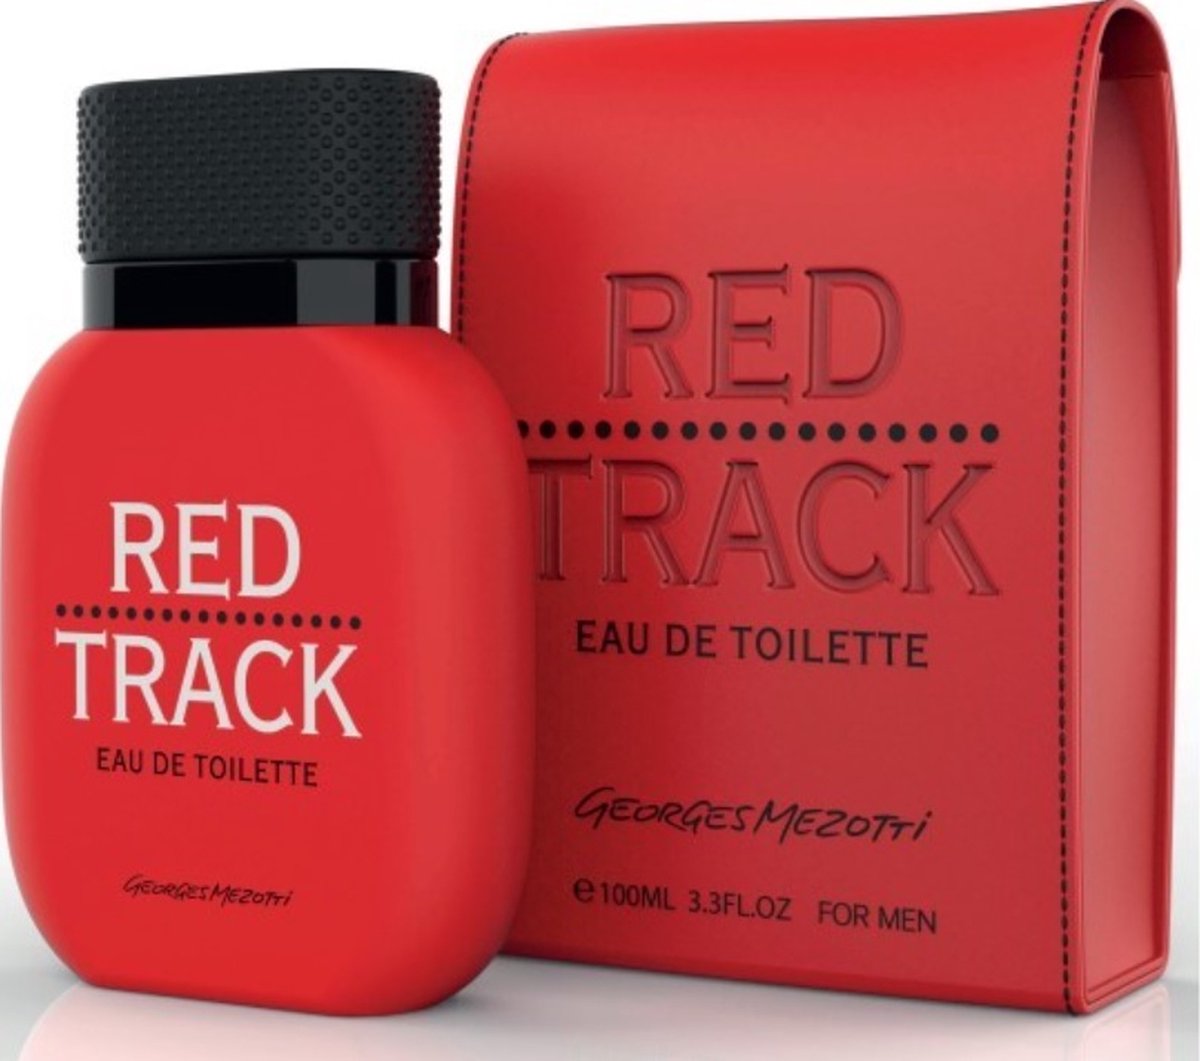 Georges Mezotti-Red Track For Men Eau de Toilette Spray 100ml